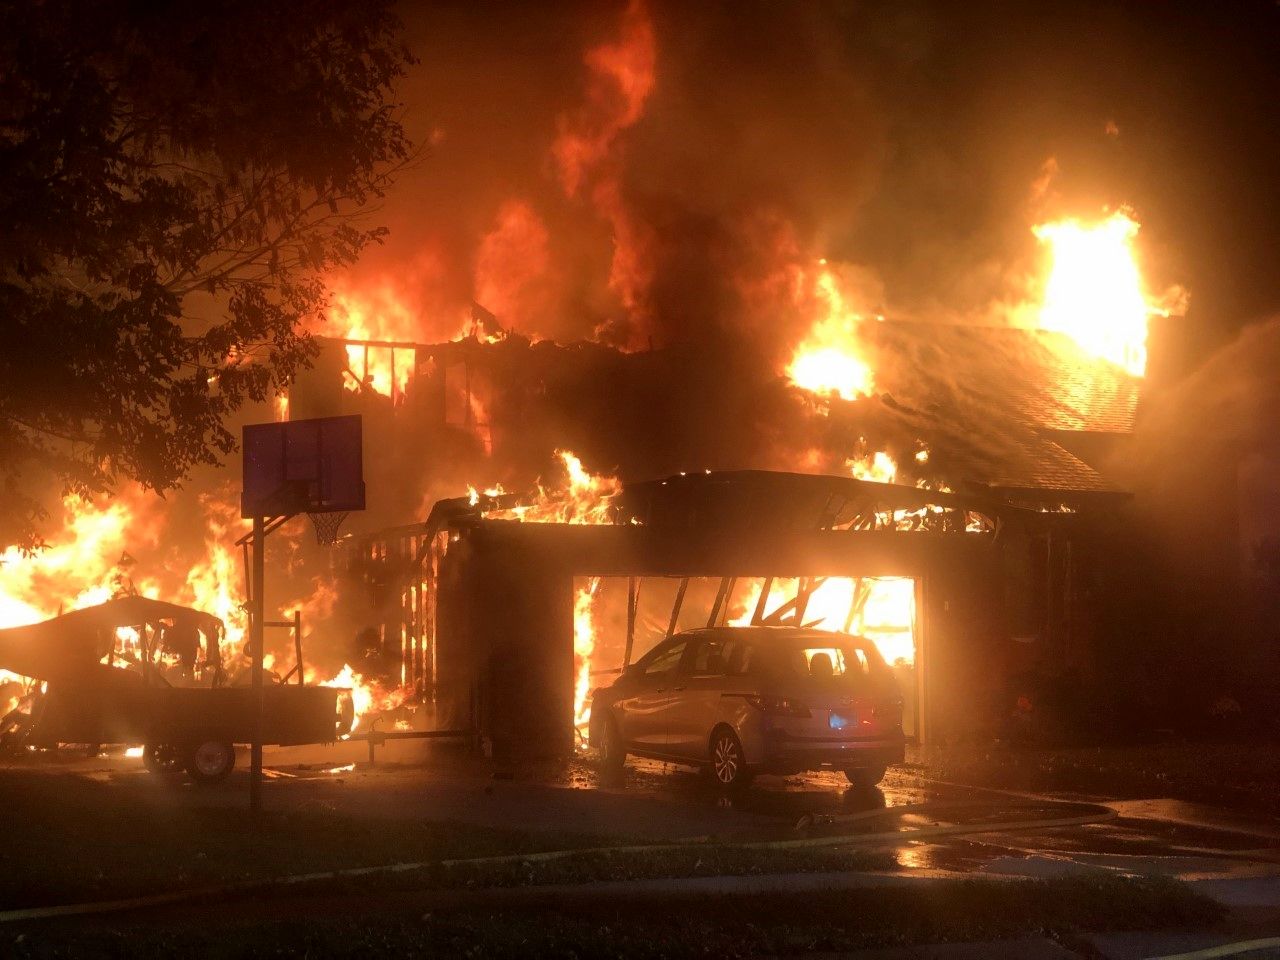  آتش سوزی بزرگ در چهار راه مولوی/ خانه ها تخلیه شدند

